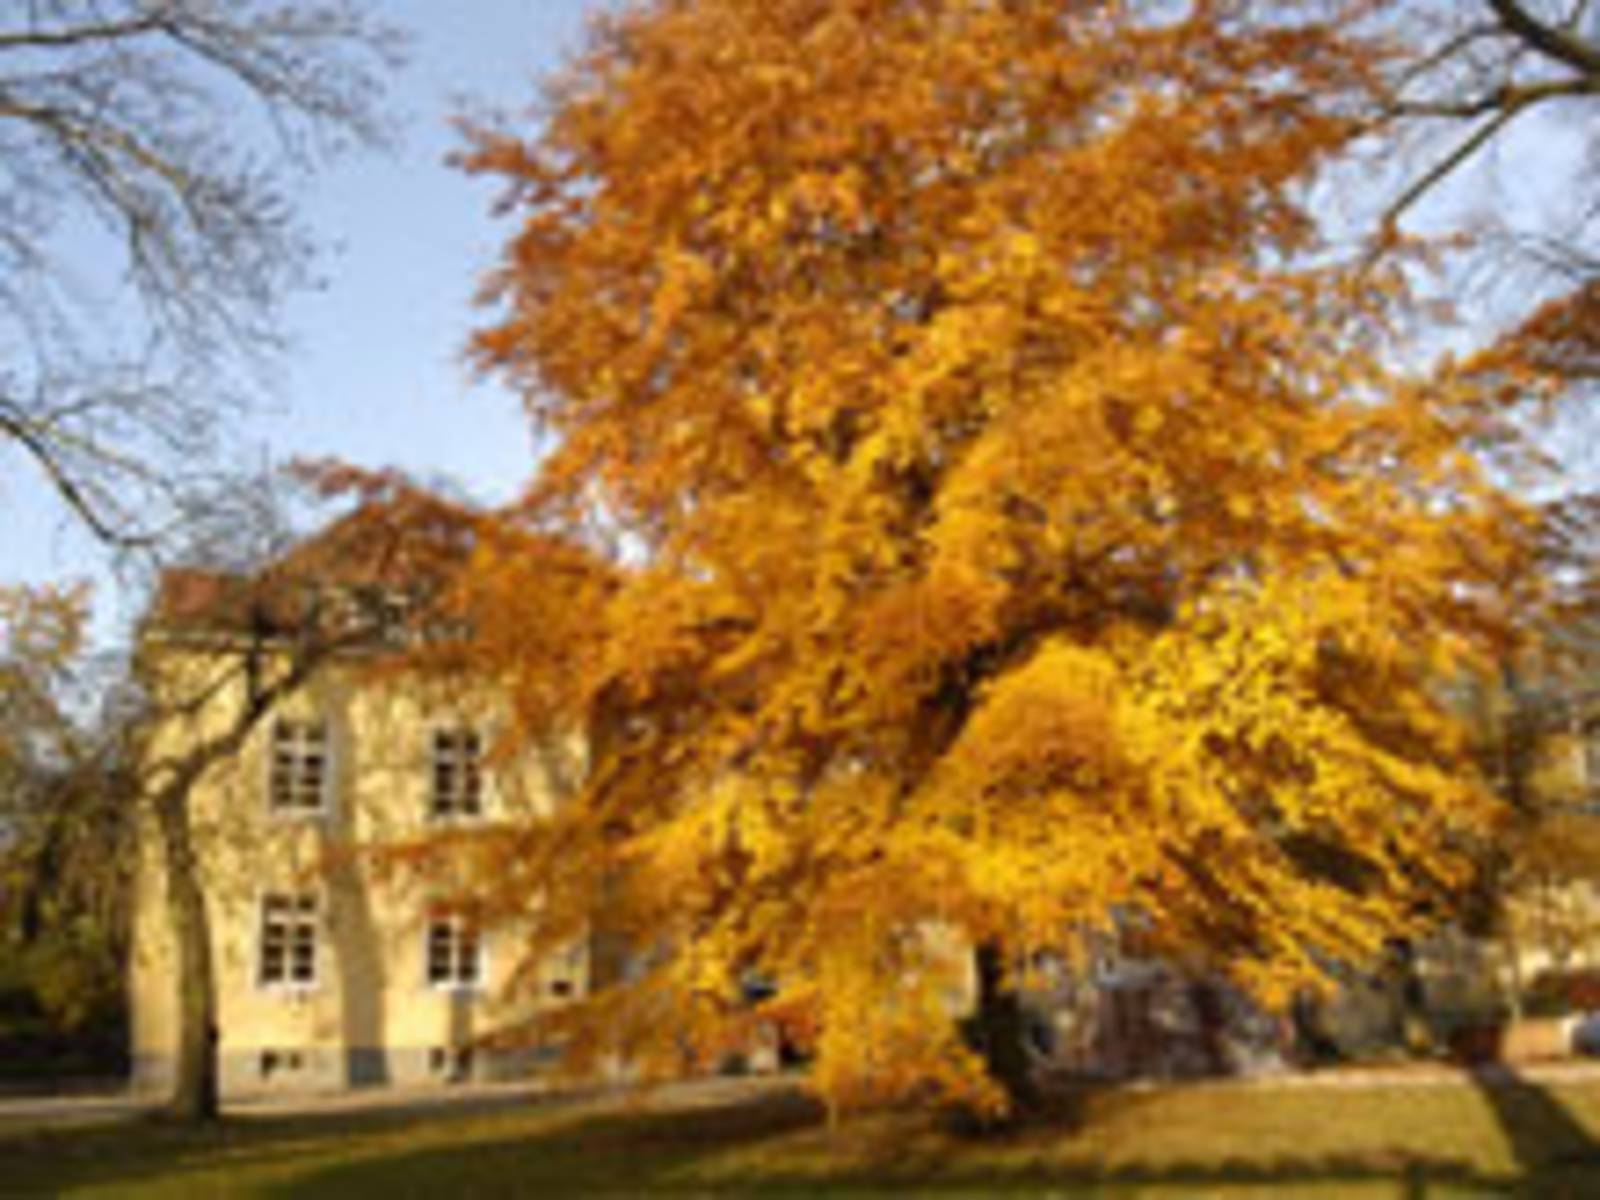 Laubbaum im Herbst in einer parkähnlichen Umgebung. Im Hintergrund ist die Seitenansicht eines Gebäudes zu sehen welches eine gelbe Fassade hat.